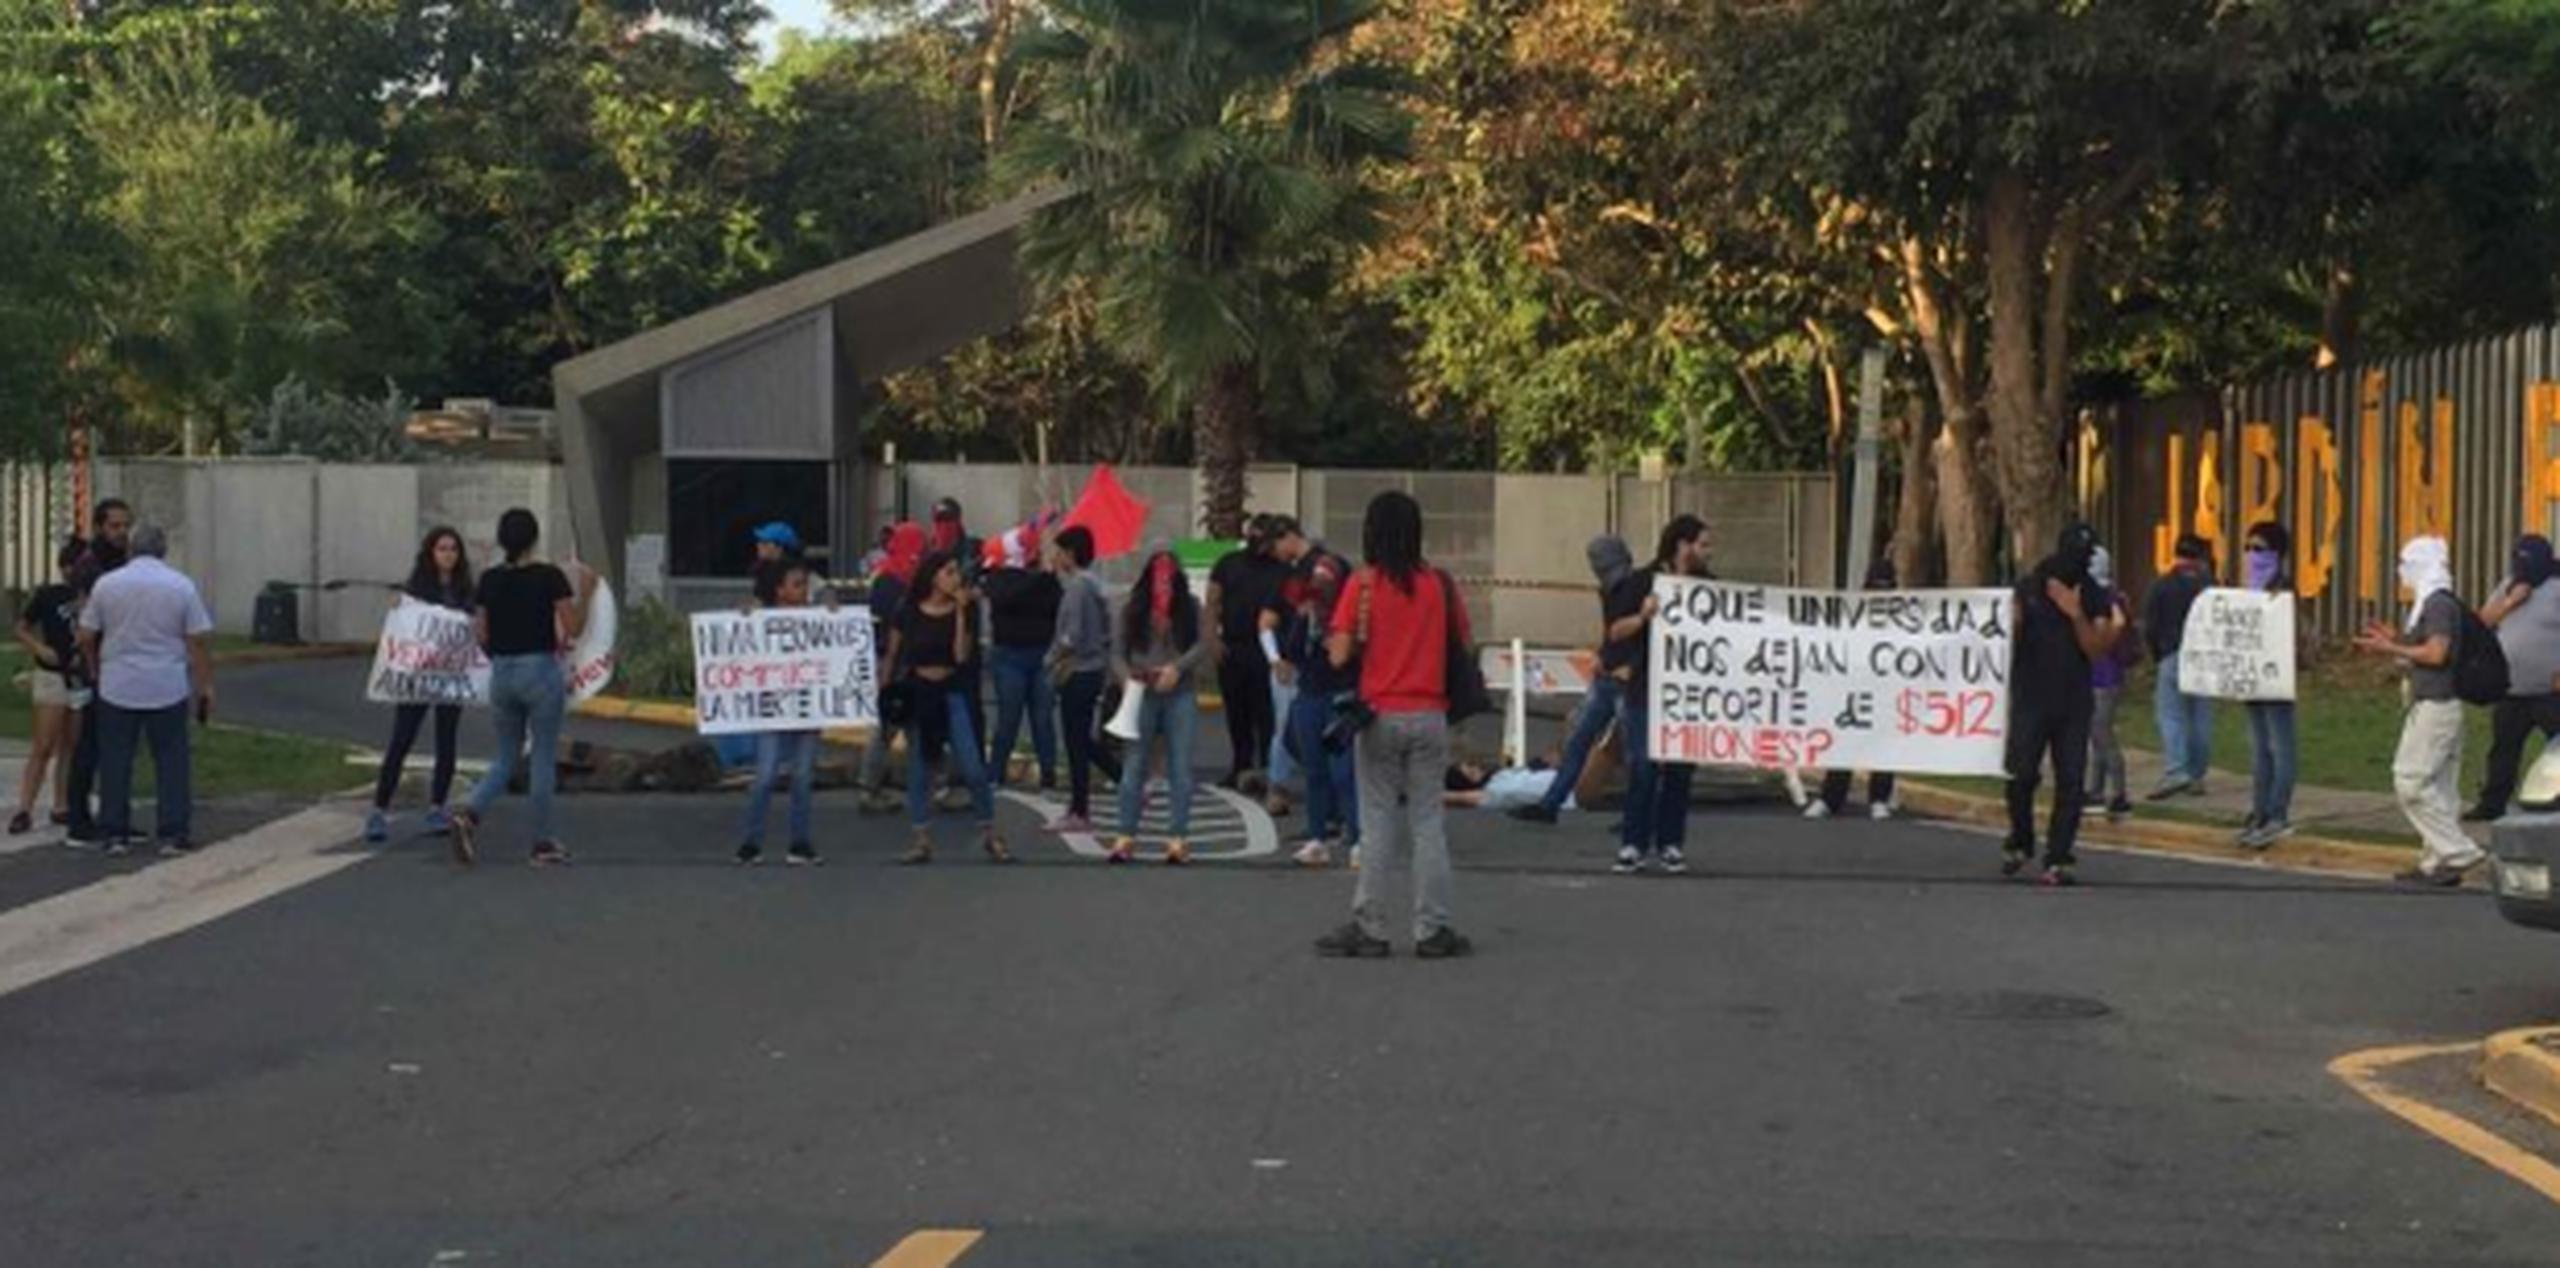 El Movimiento Estudiantil que encabeza la huelga indefinida en el recinto de Río Piedras de la UPR, anunció la manifestación desde ayer. (Suministrada)